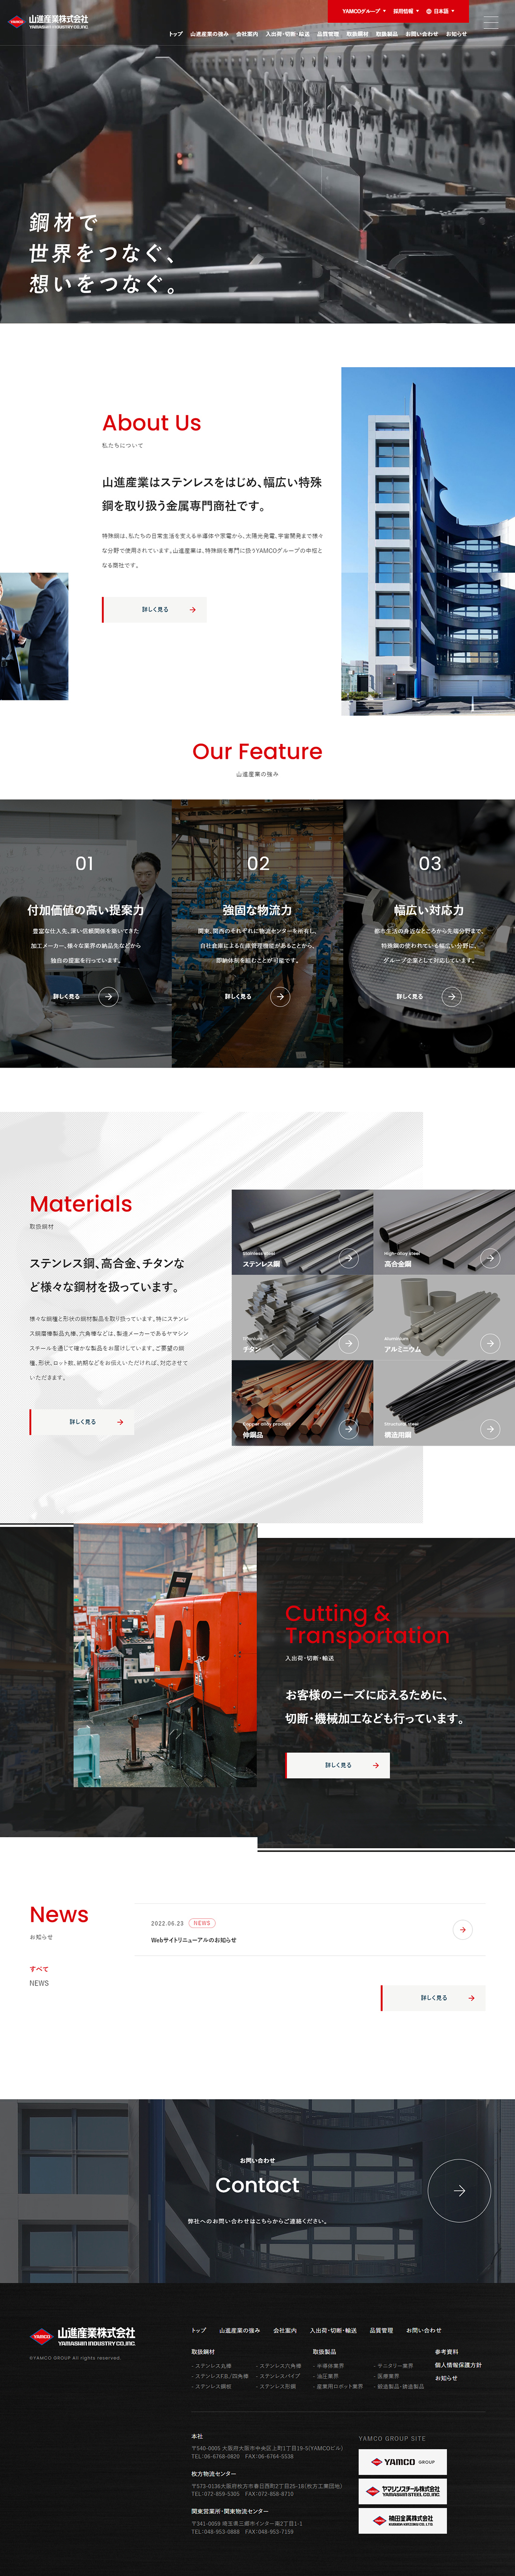 山進産業はステンレスをはじめとした特殊鋼を扱う金属専門商社